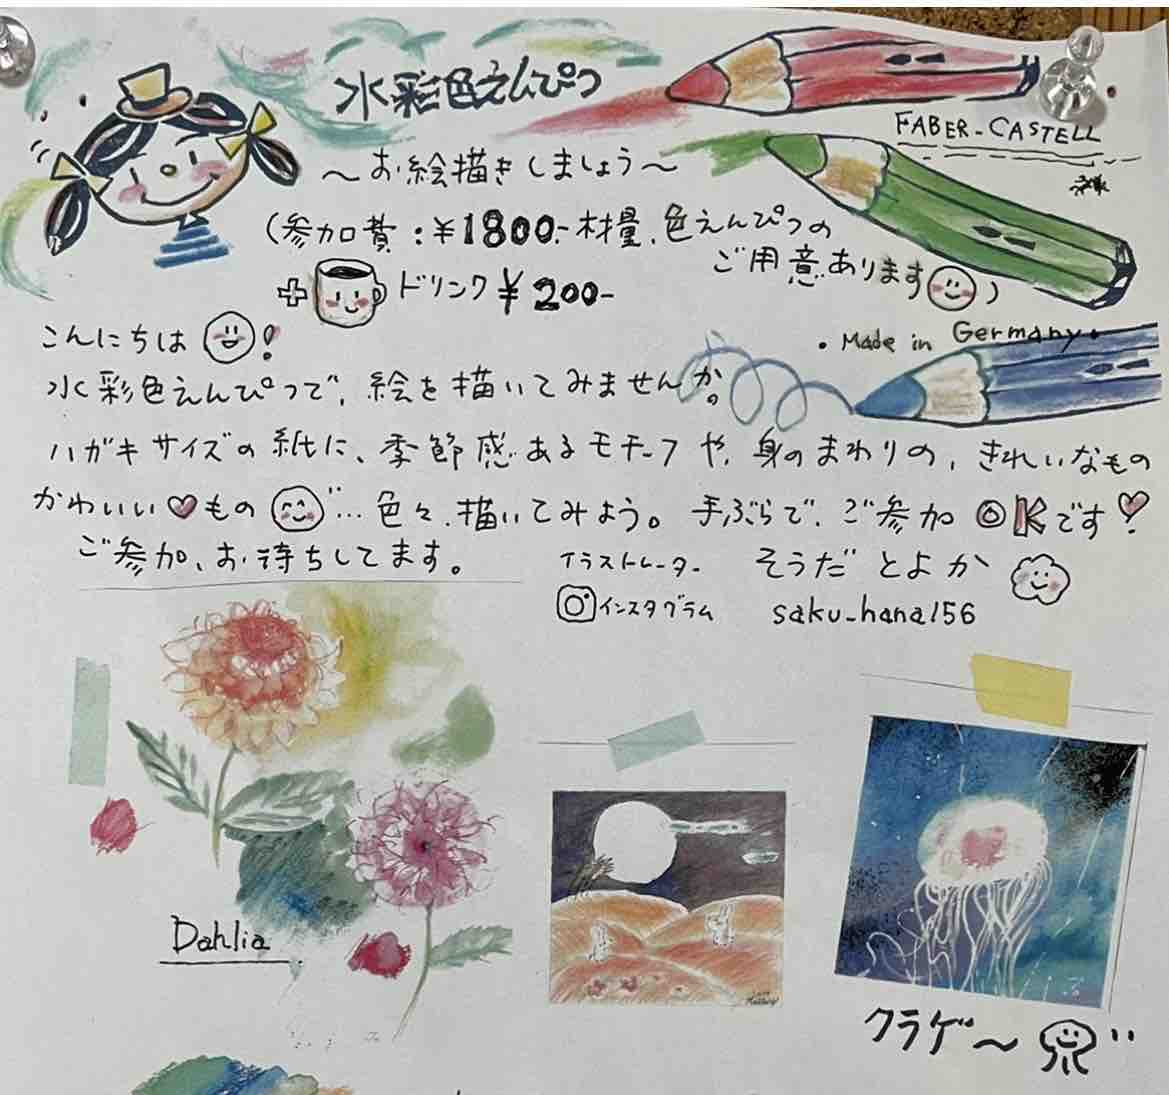 水彩画色鉛筆講座のお知らせ 東戸塚みんなの居場所 お茶の間 楽交へようこそ